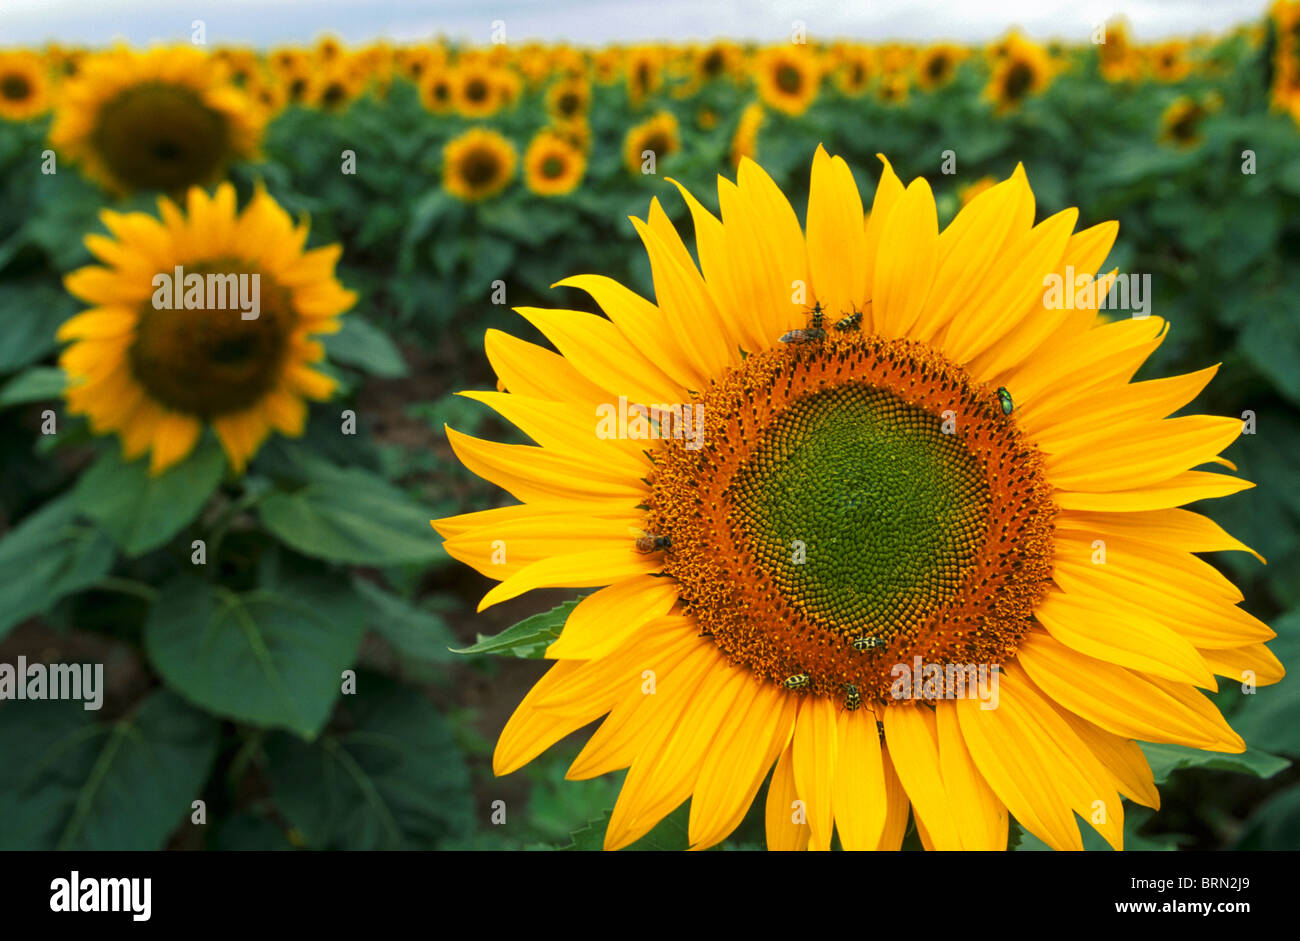 Un champ de tournesols en fleurs - la fleur en premier plan avec un hôte de pollinisateurs y compris les abeilles, les coccinelles jaune et noir Banque D'Images